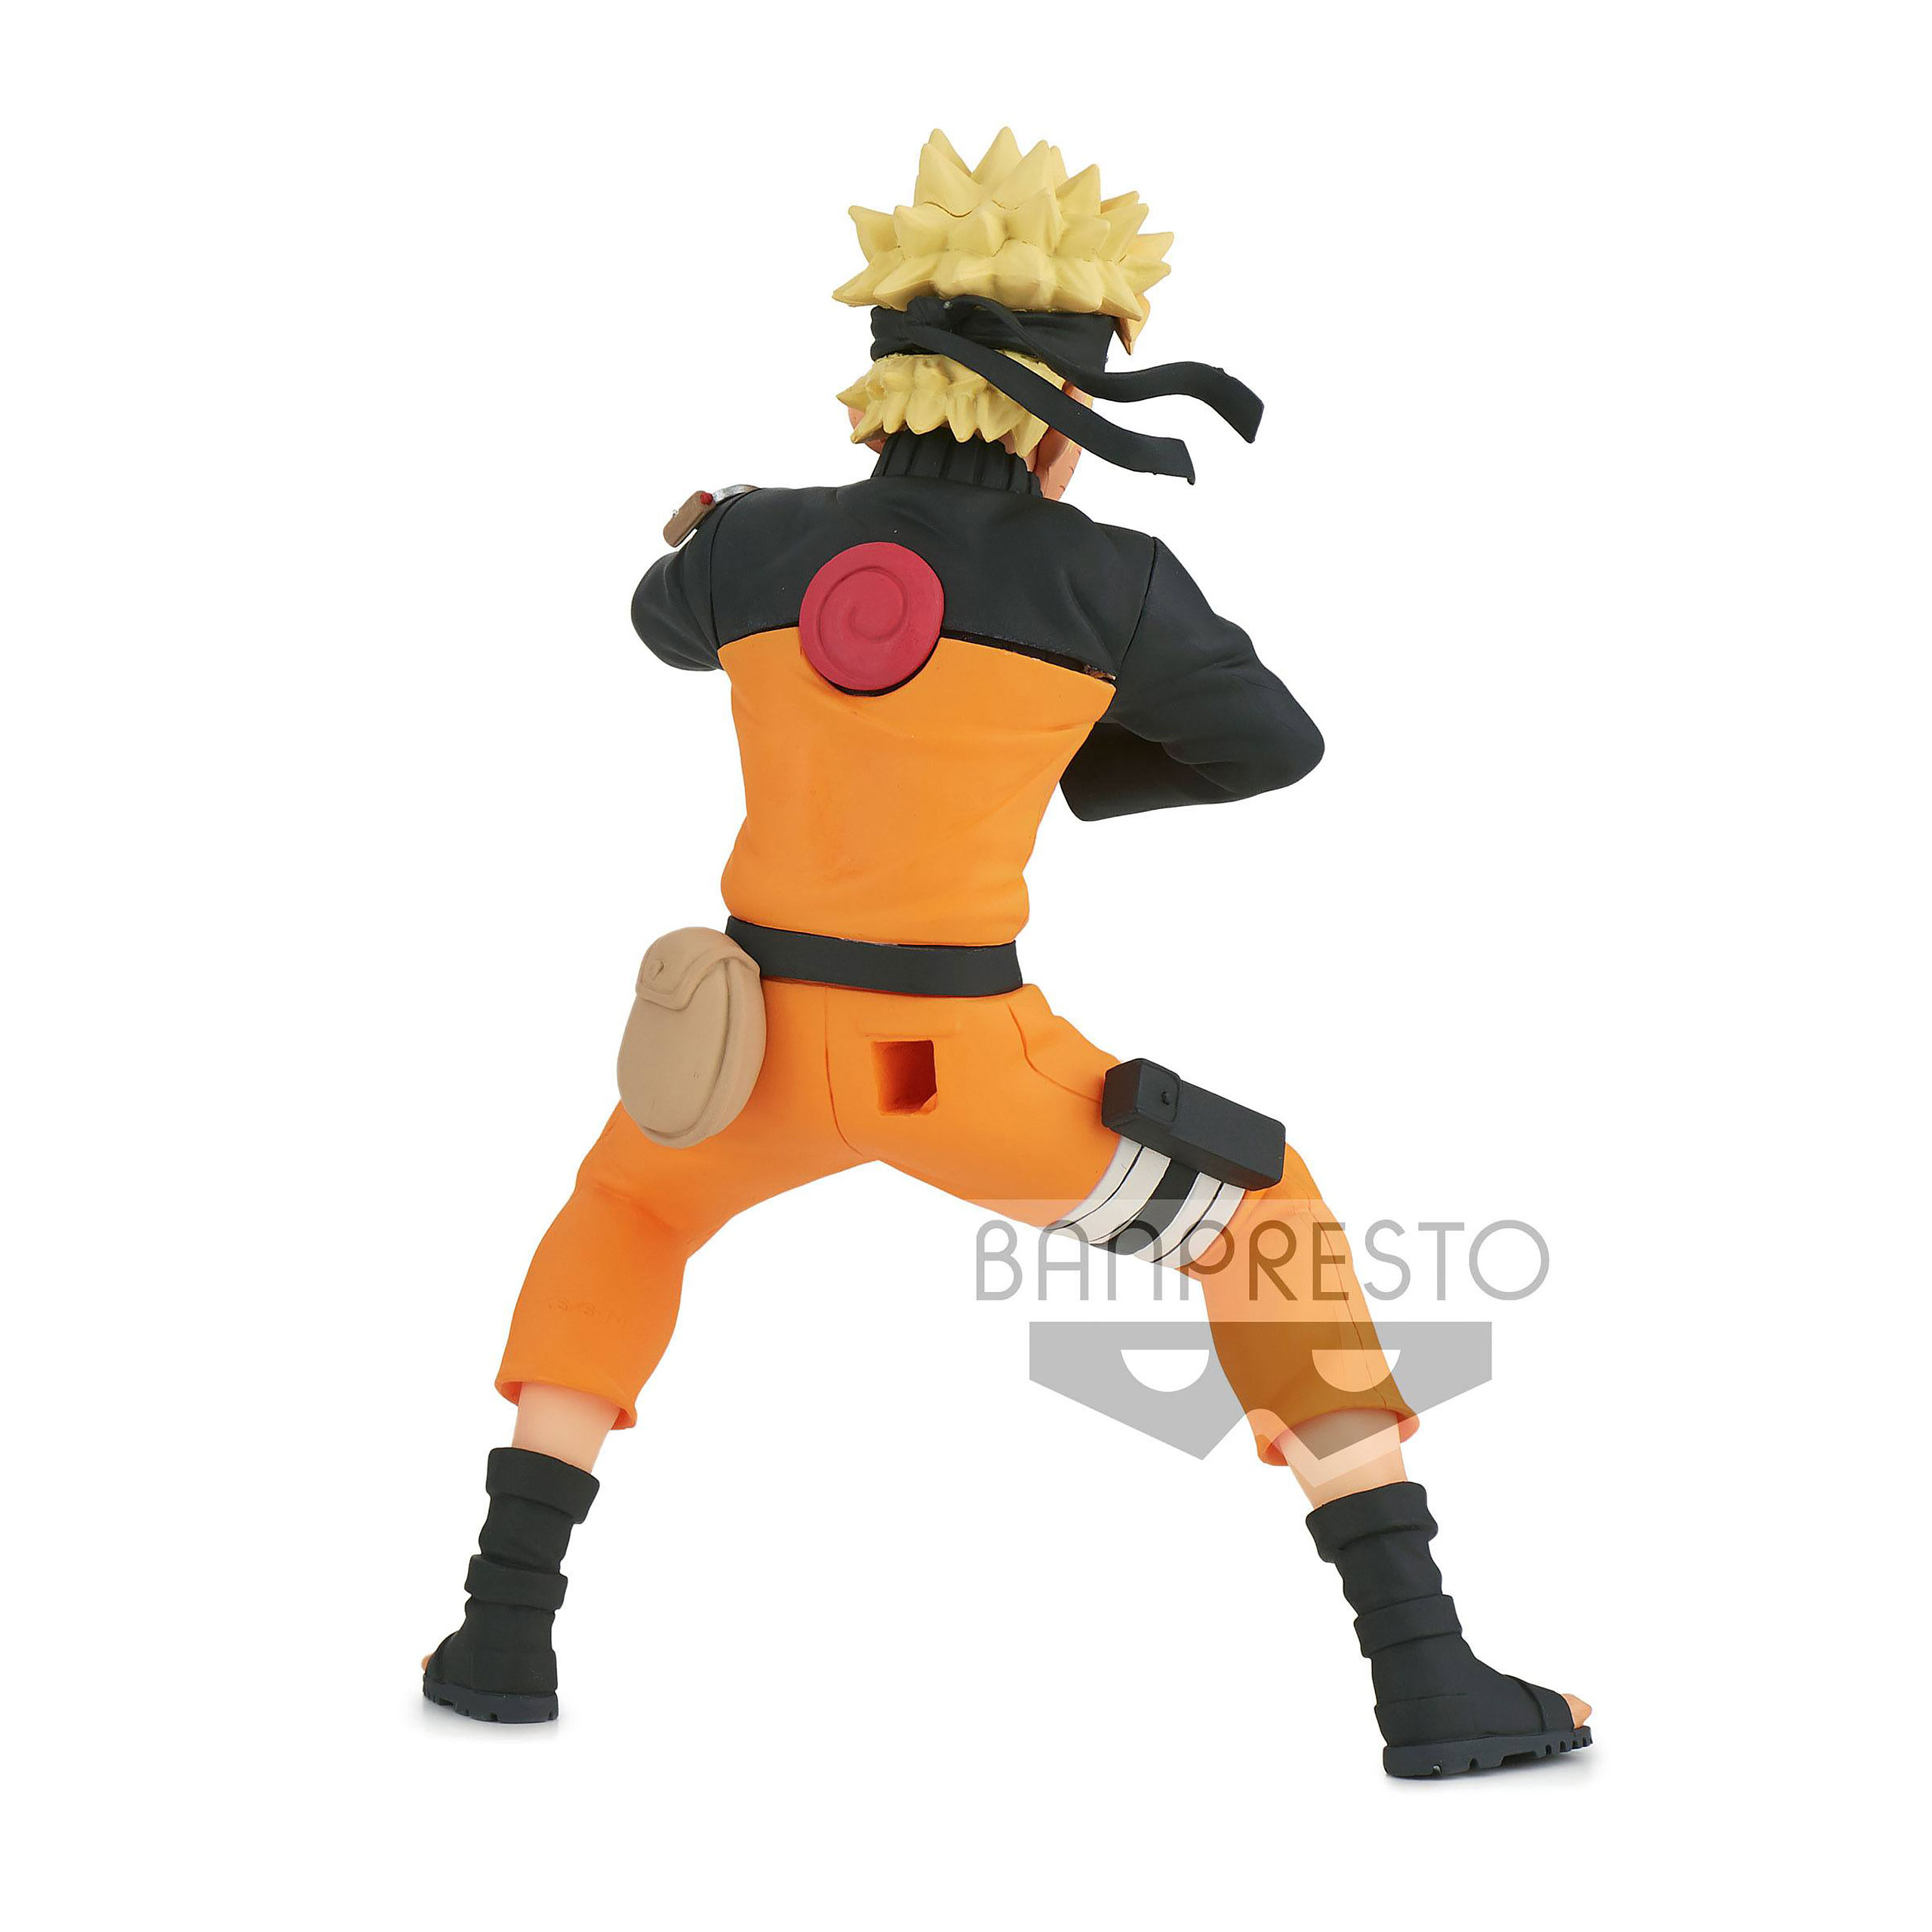 Naruto Shippuden - Figurine Naruto Uzumaki 17 cm